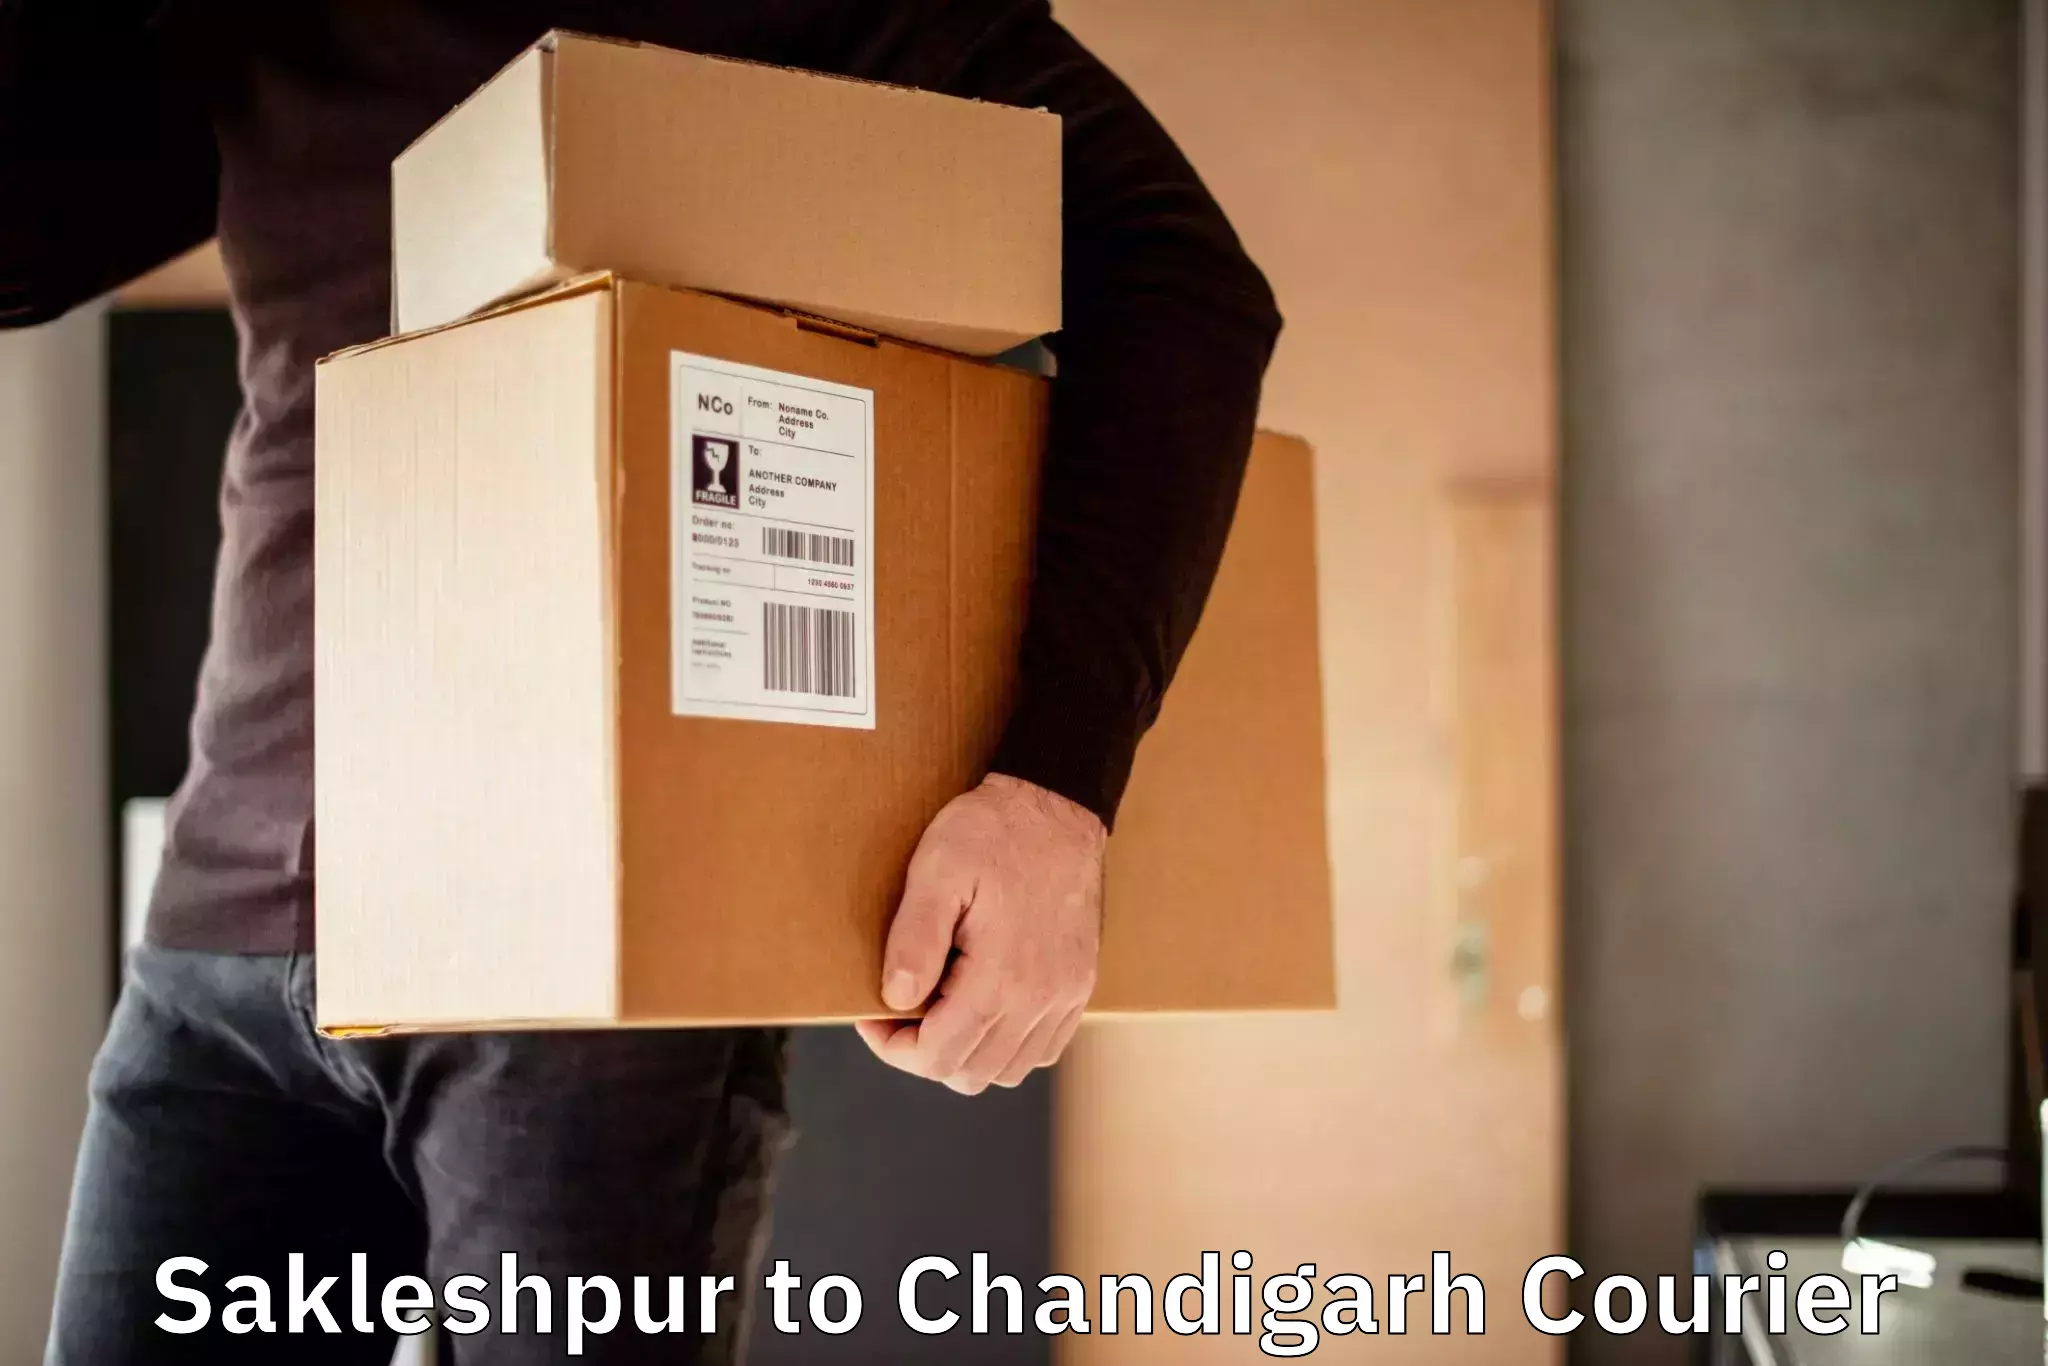 Courier service innovation Sakleshpur to Chandigarh